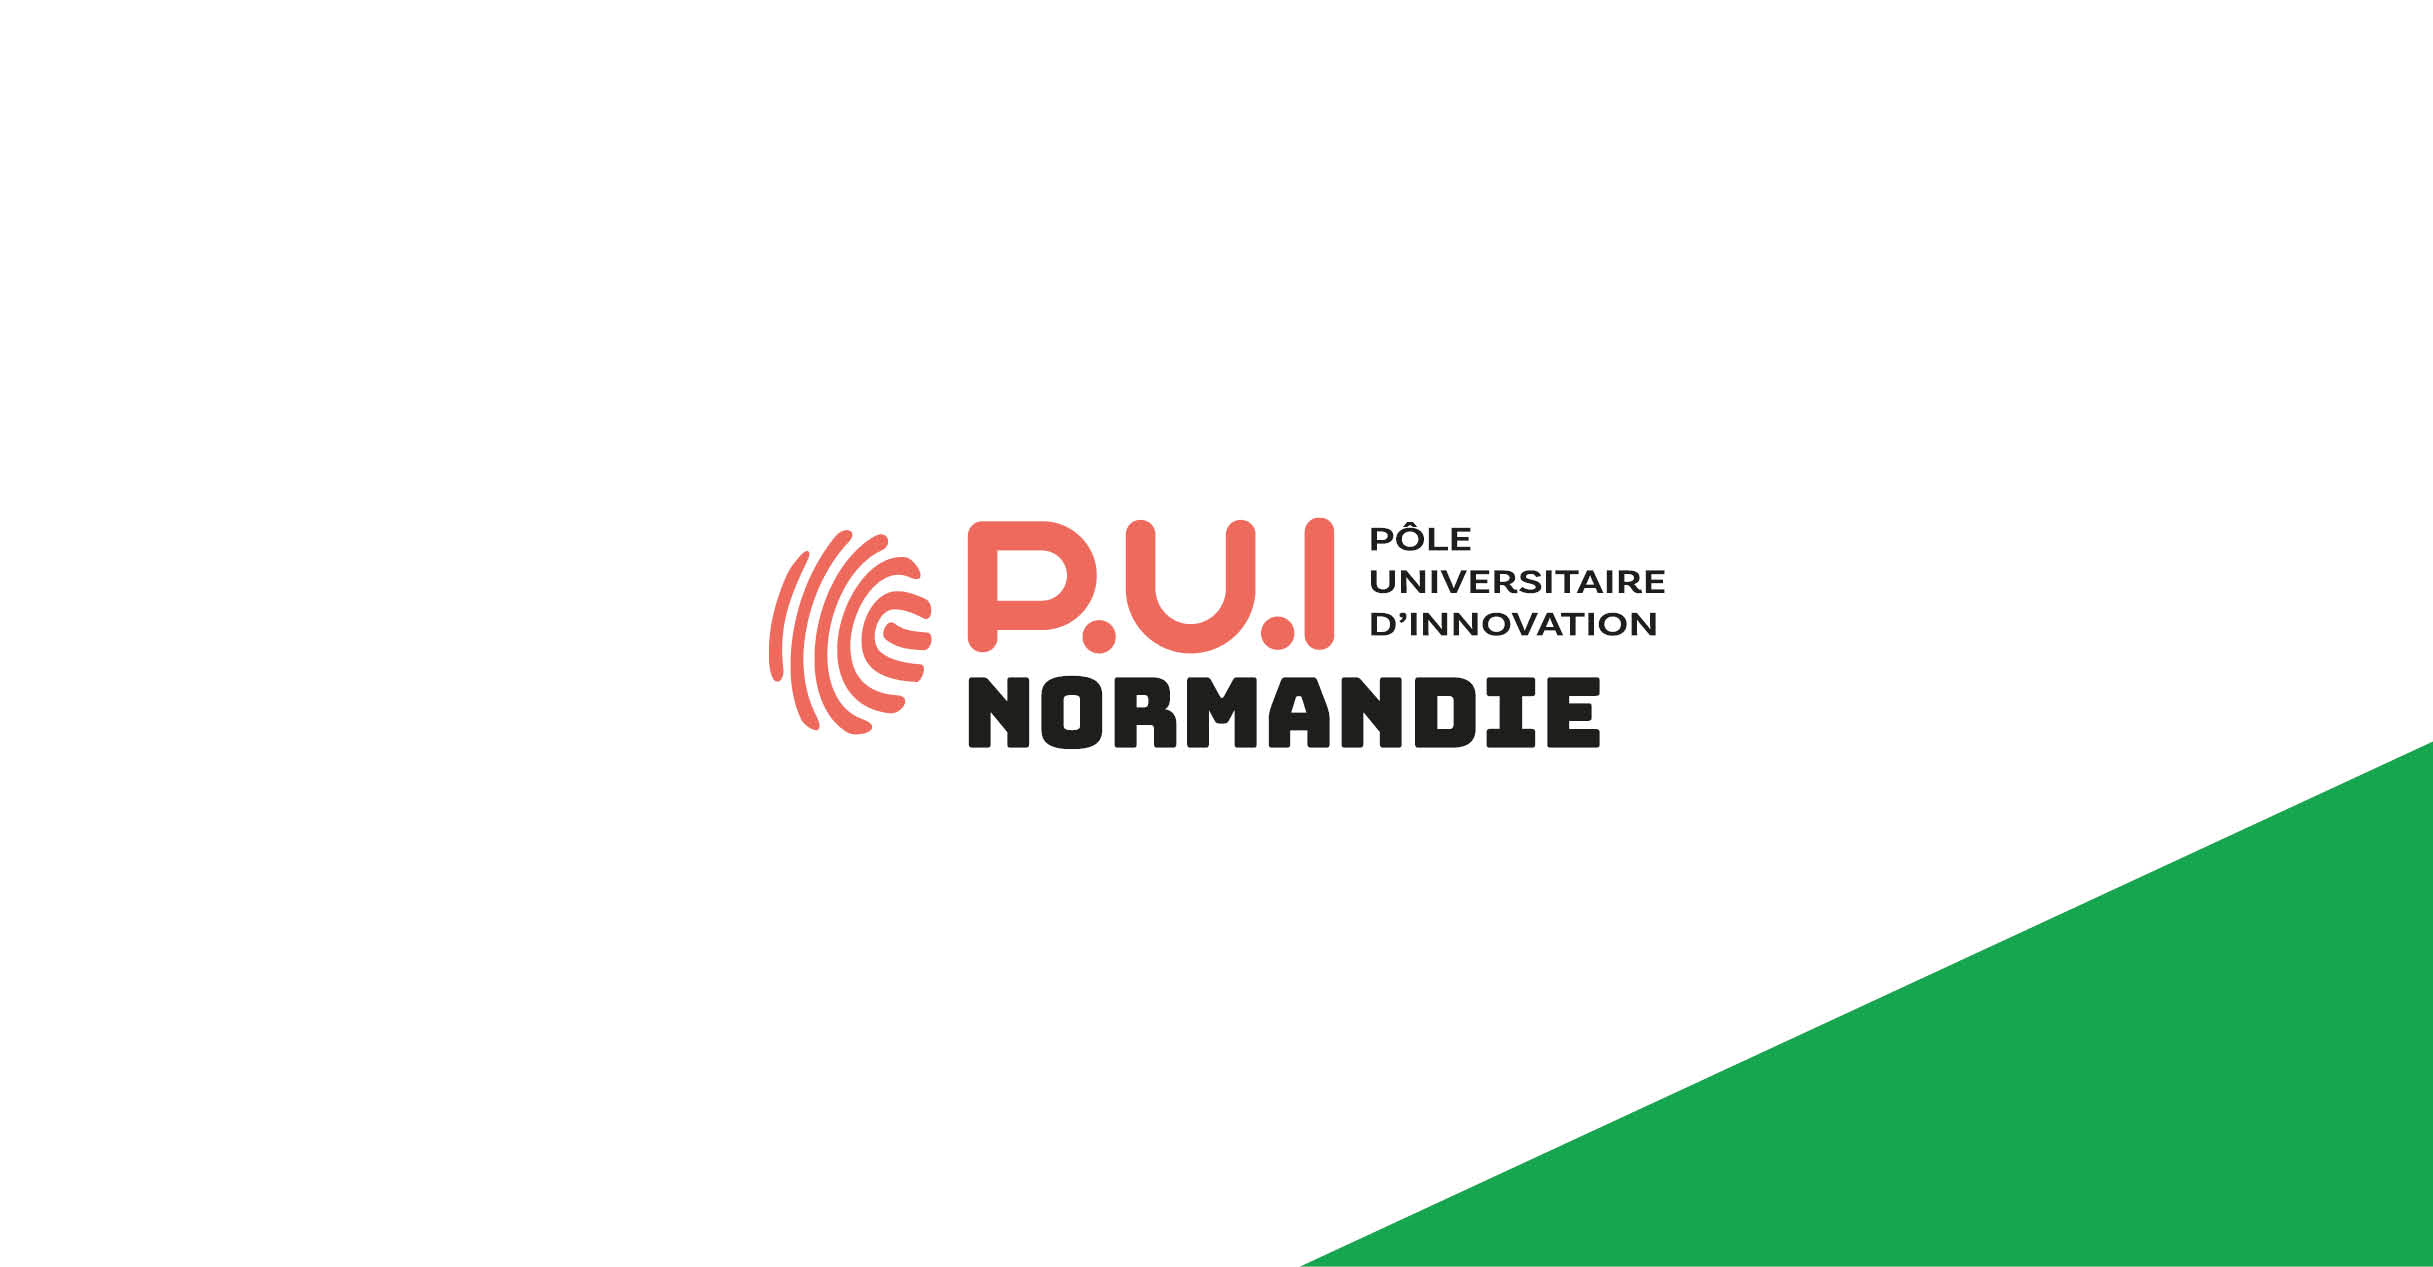 P.U.I Normandie - Pôle universitaire d’innovation